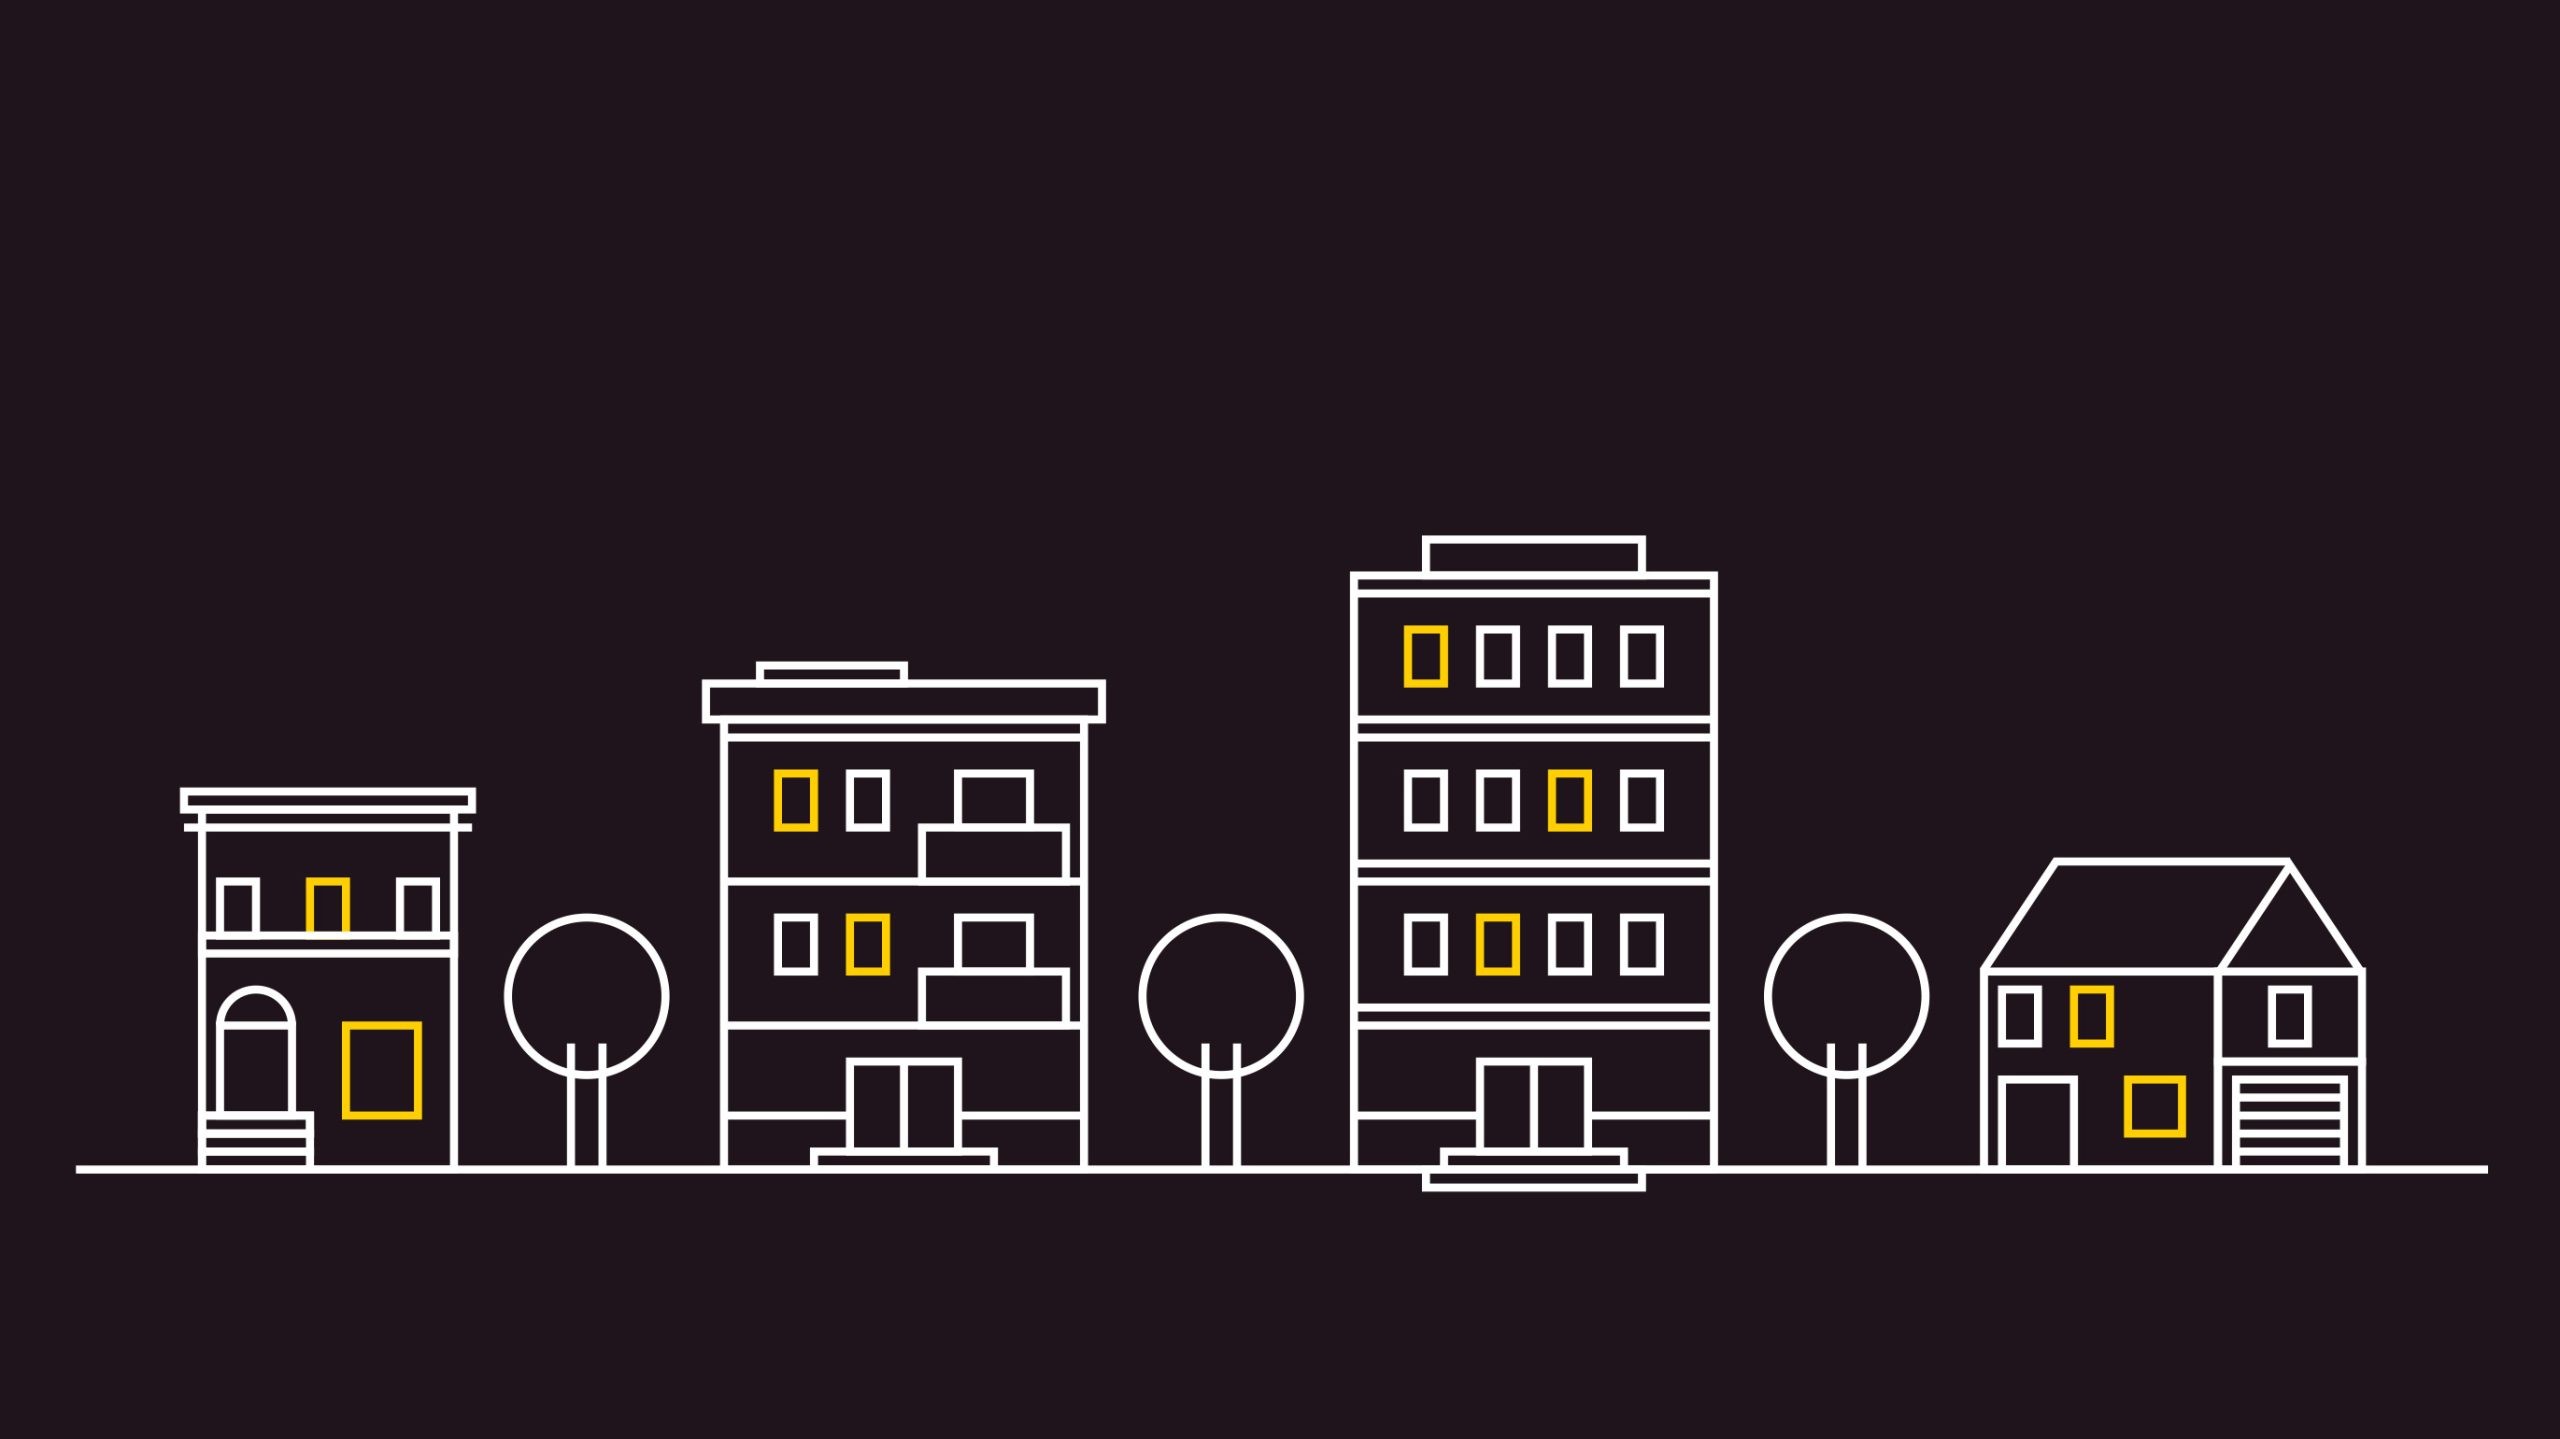 Captura del video animado de Lisbak donde se ve un skyline con viviendas